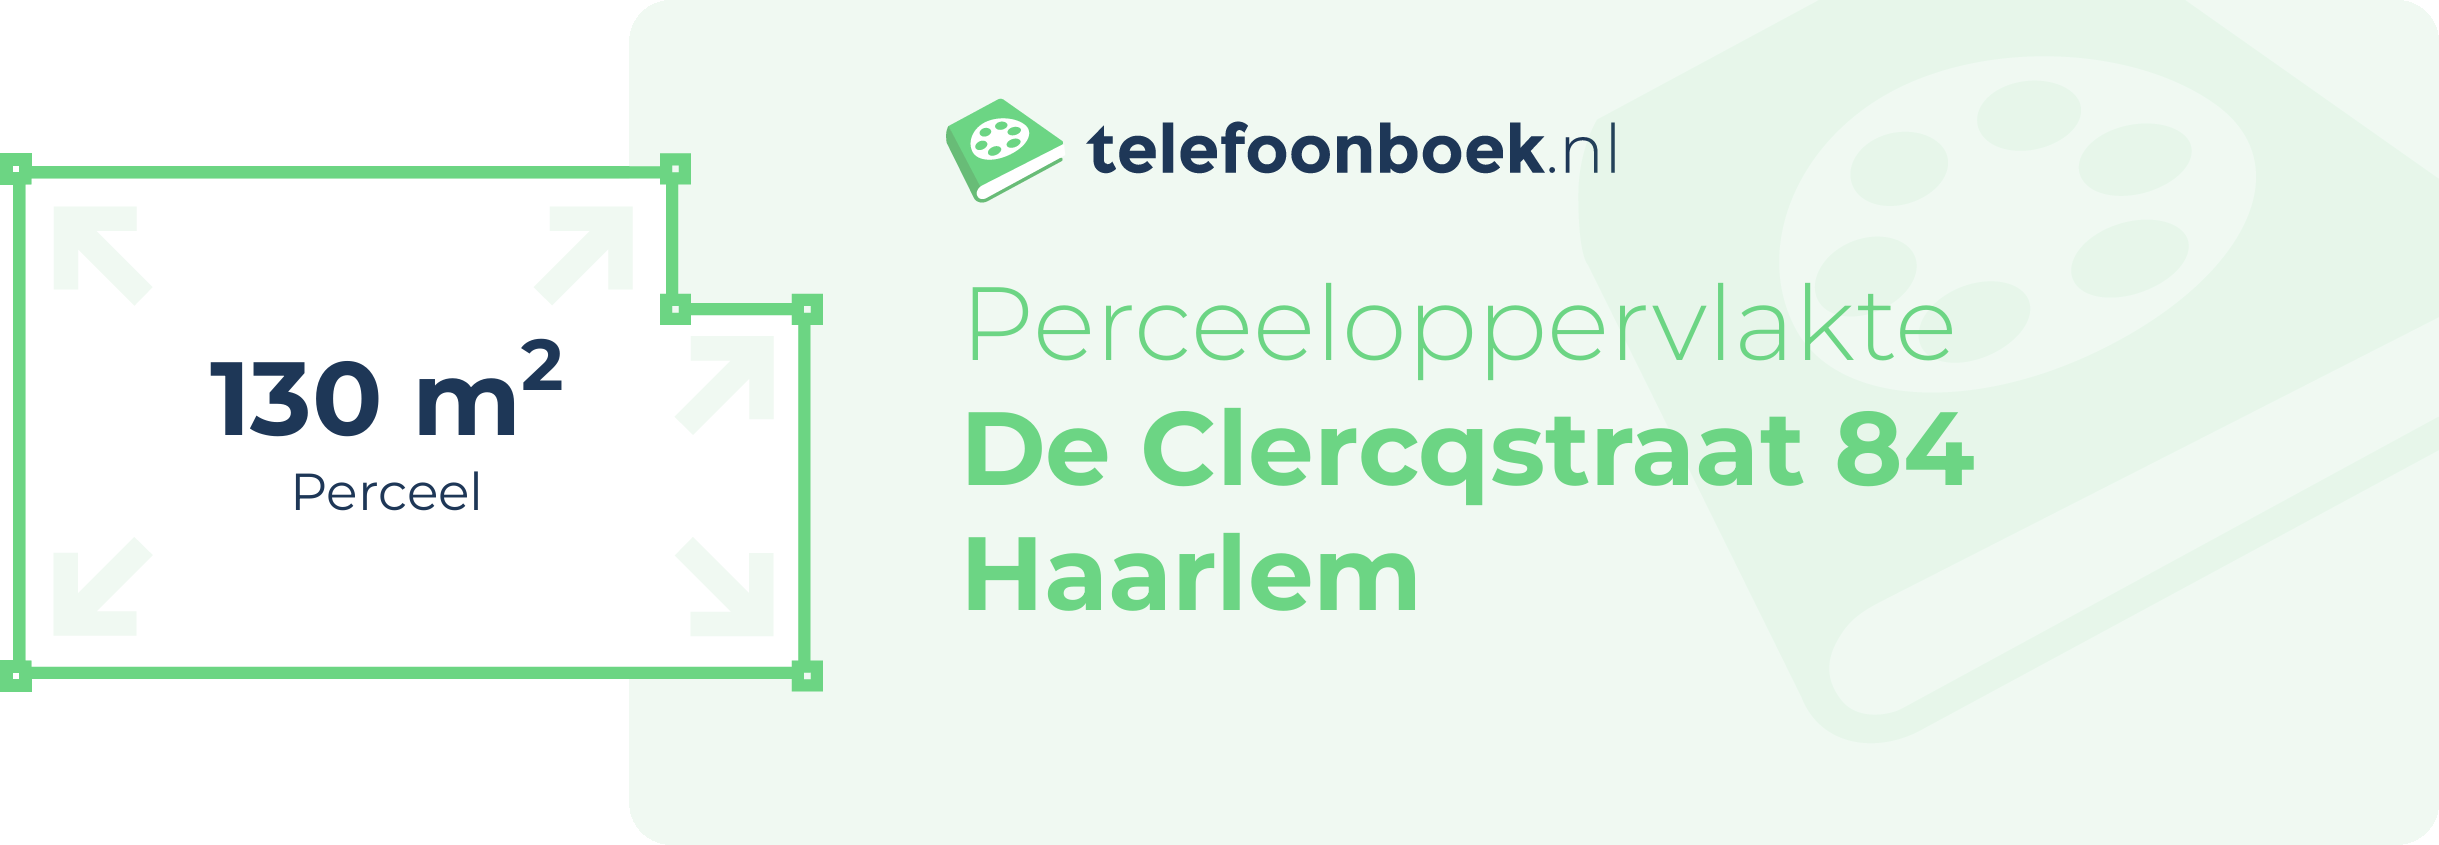 Perceeloppervlakte De Clercqstraat 84 Haarlem